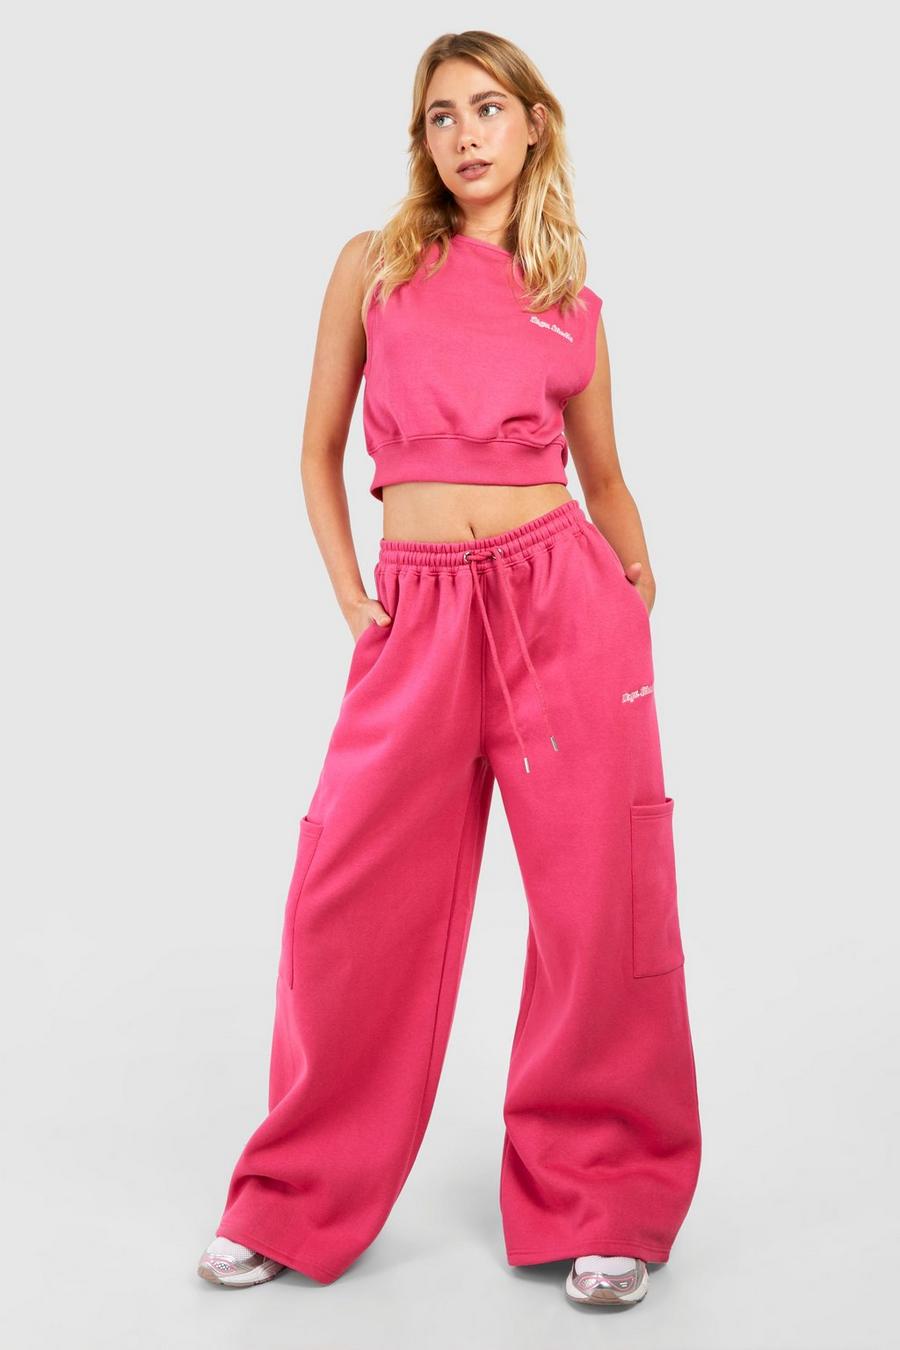 Pantalón deportivo con bolsillos cargo y firma Dsgn Studio, Hot pink